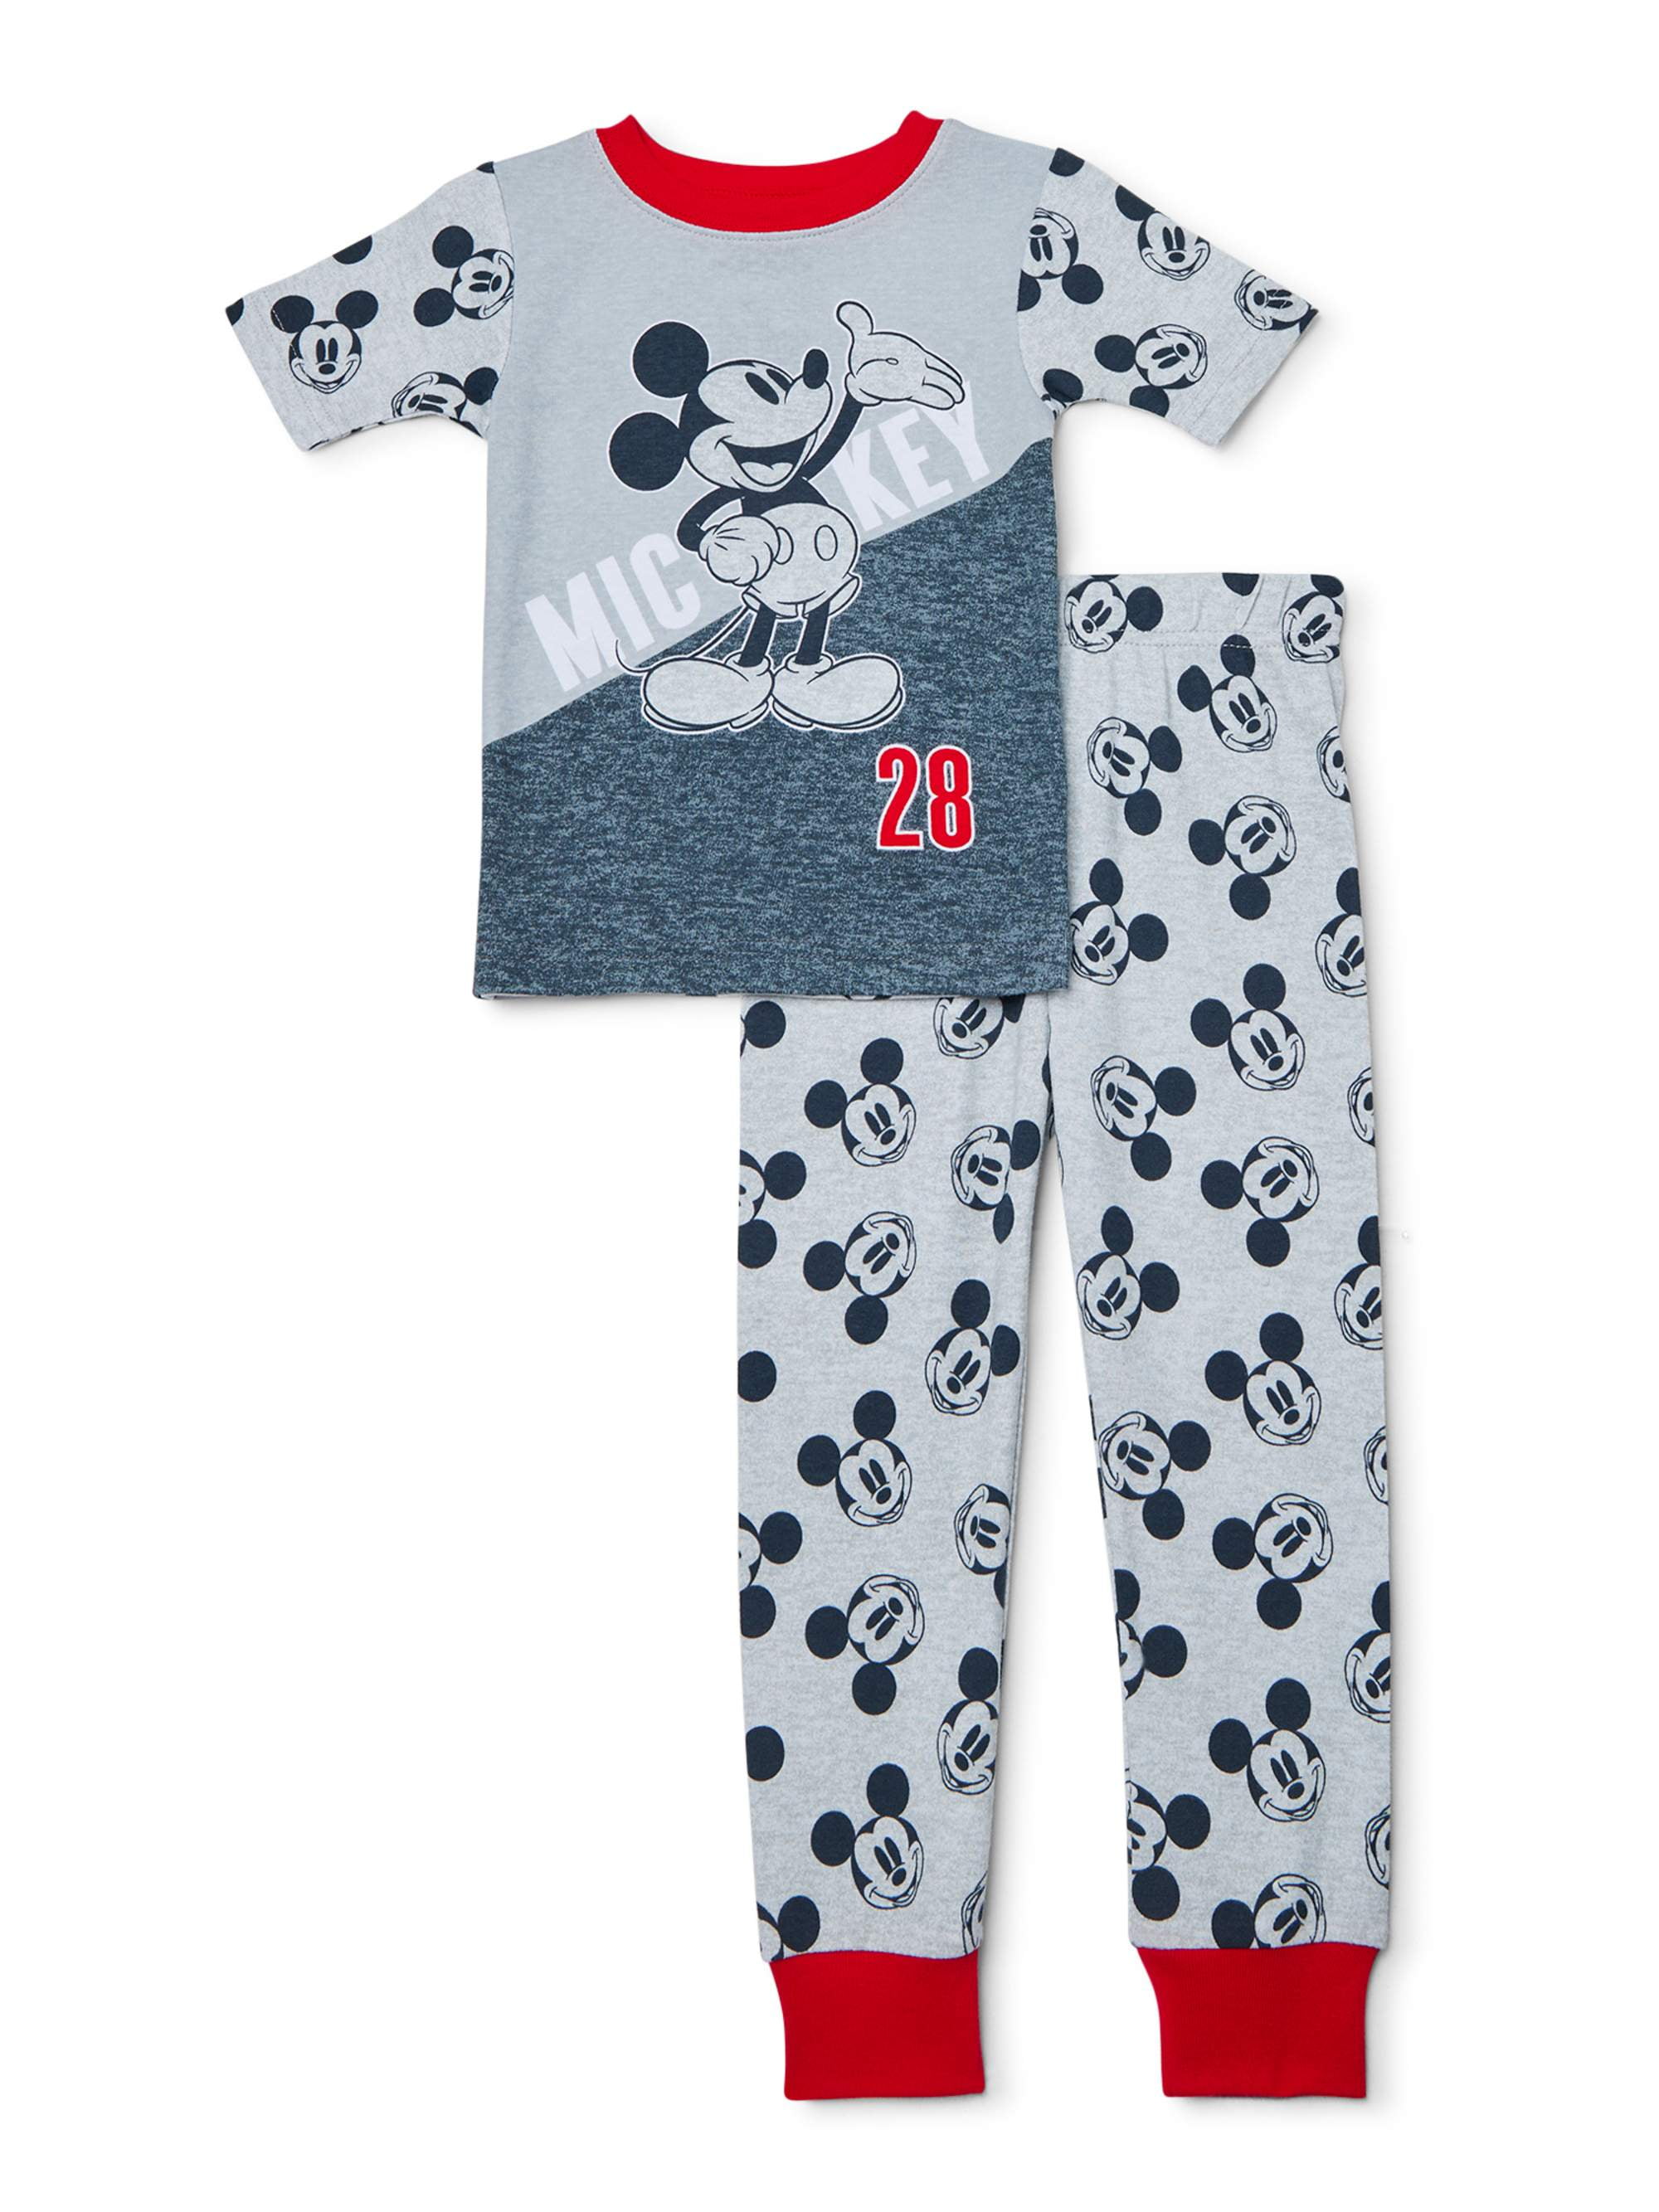 Baby Halloween Pyjamas Disney Pjs Nightwear Set George Multipack Mickey Mouse 